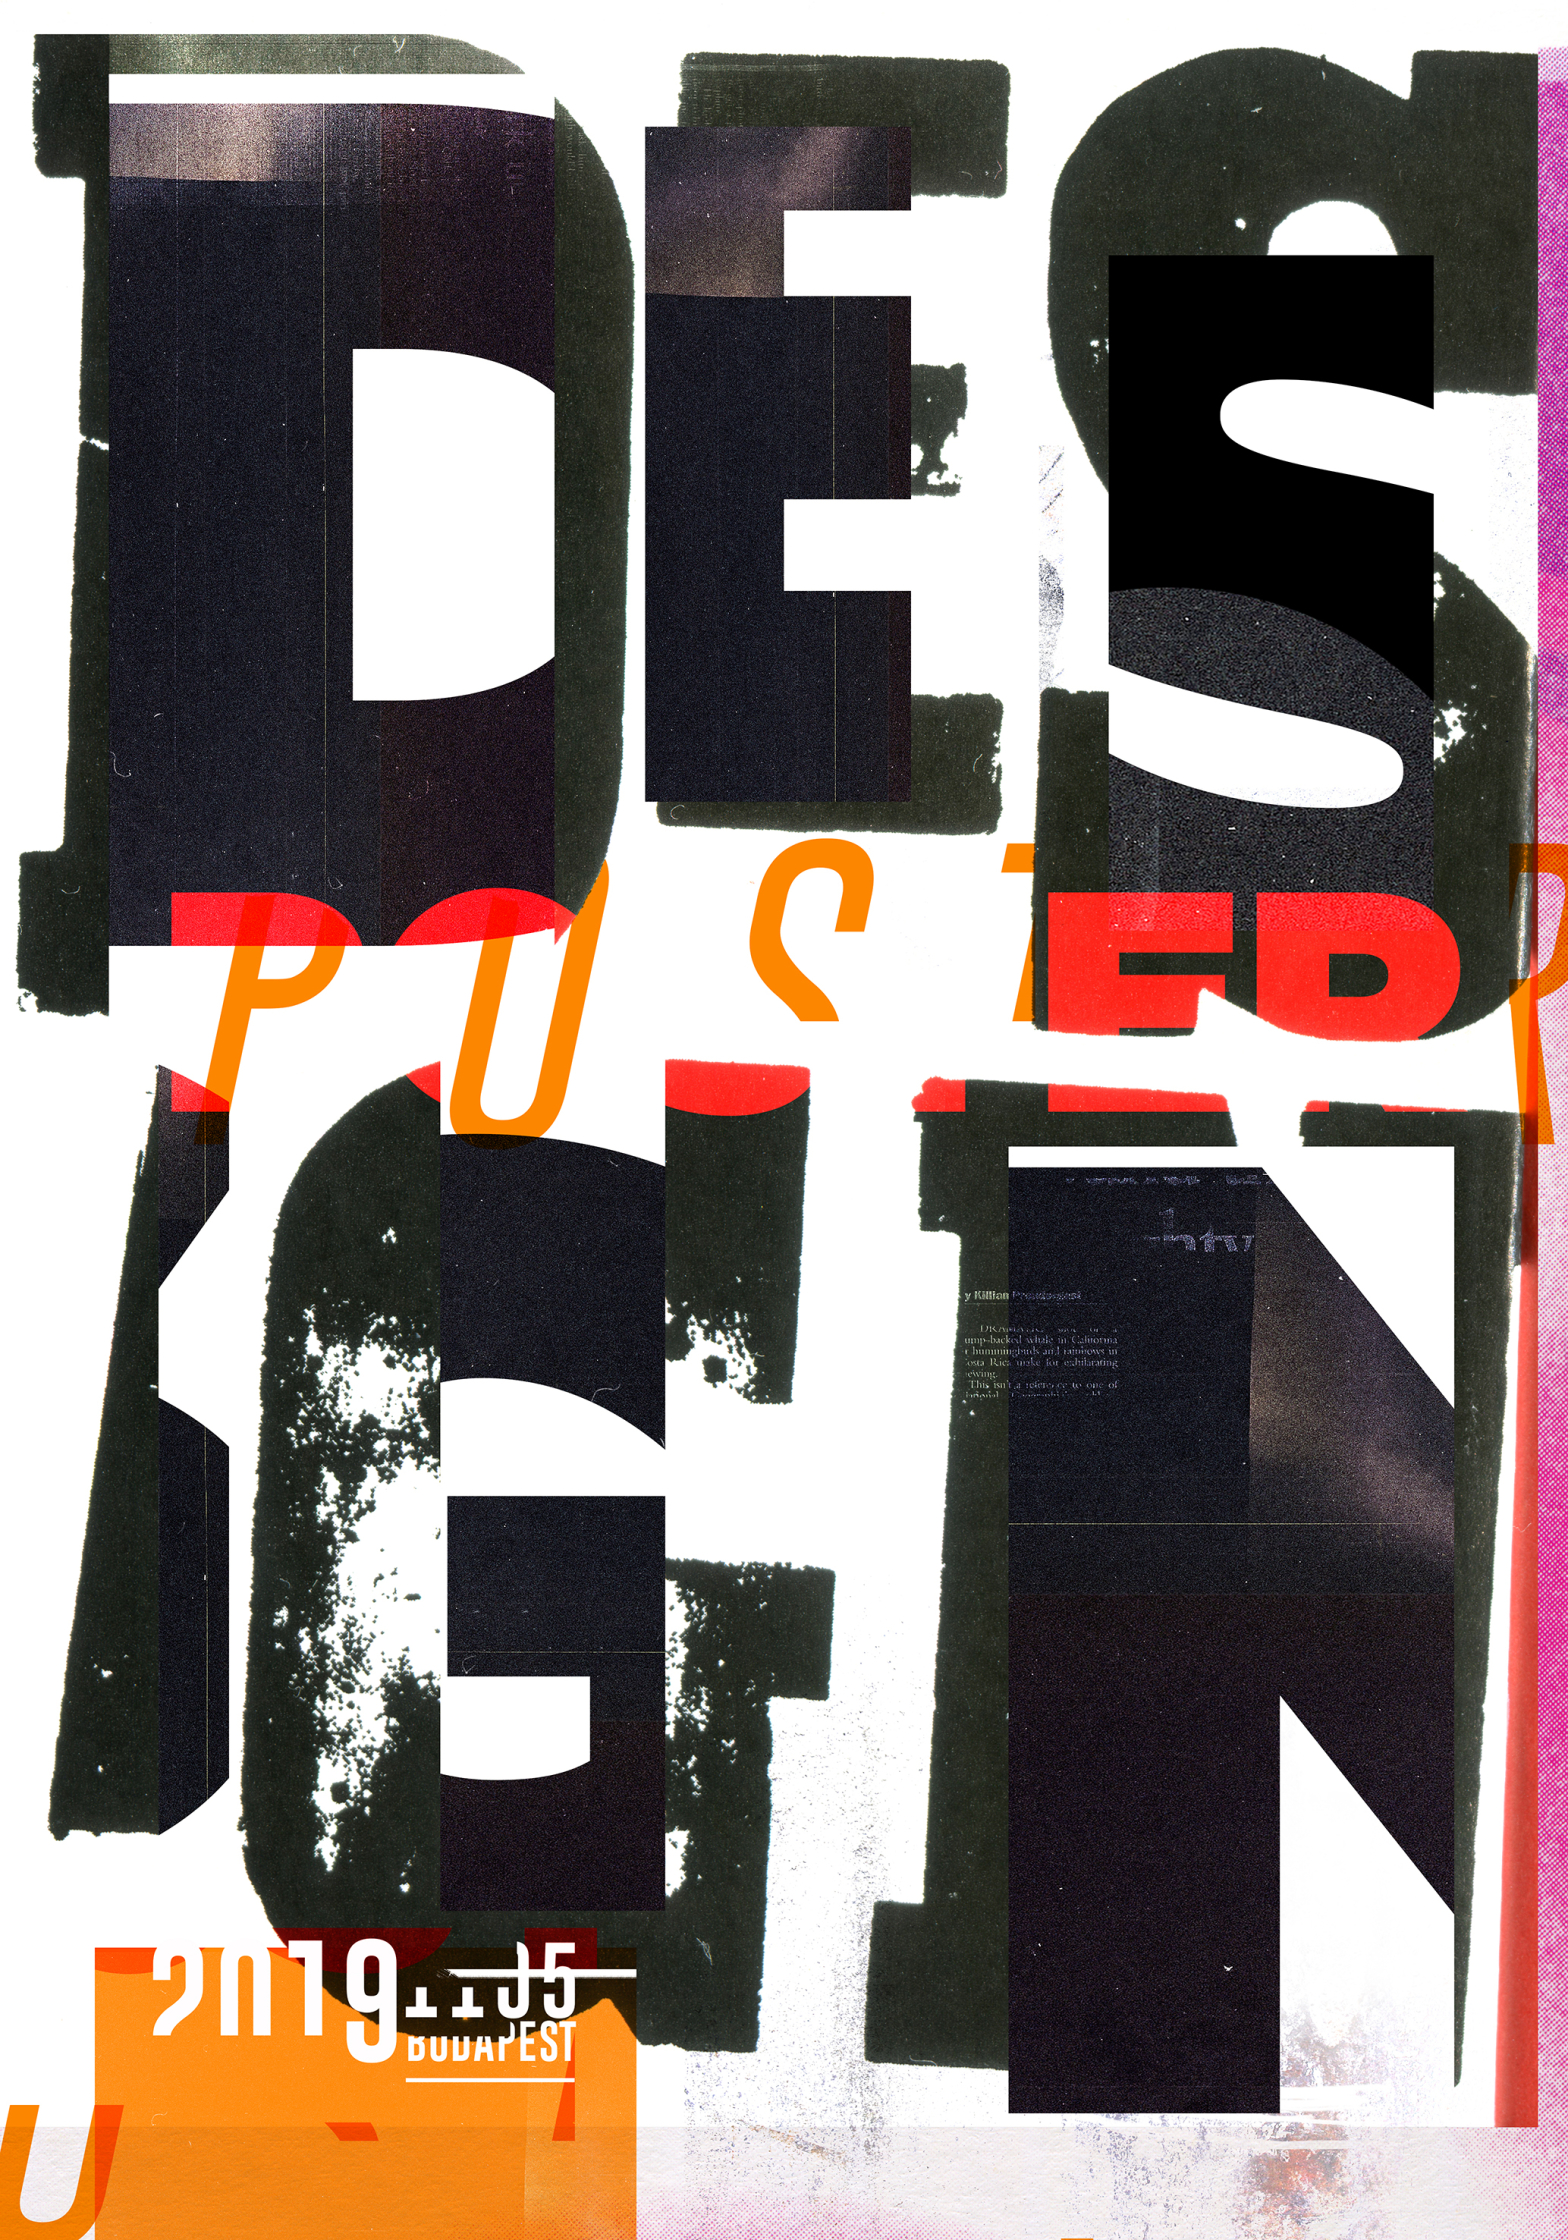 design poster.jpg